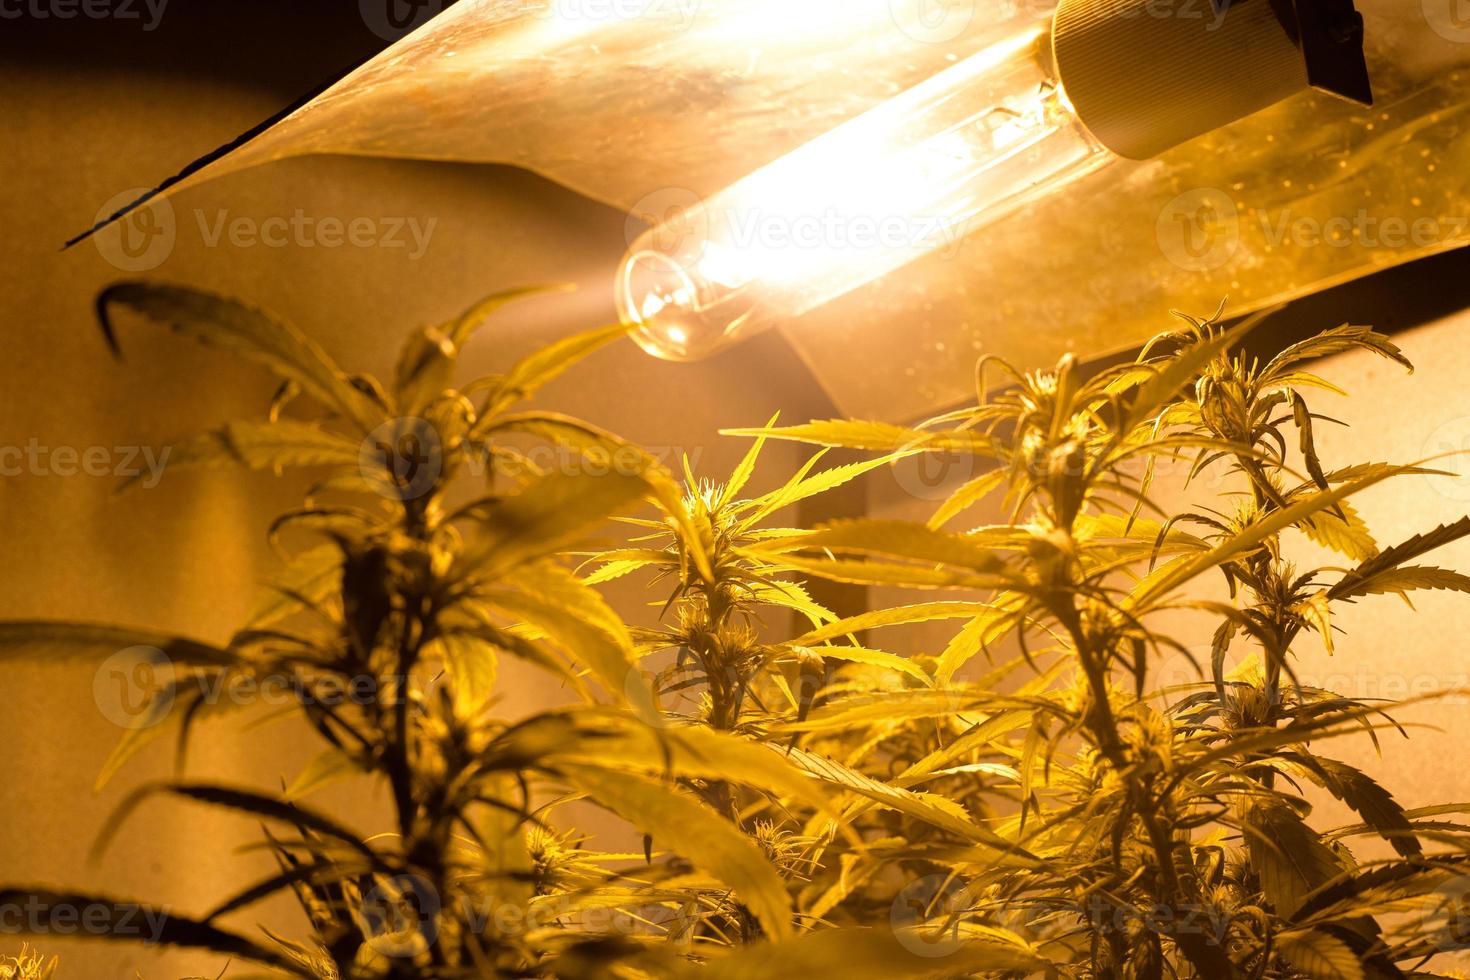 plantação doméstica de maconha com plantas de cannabis em flor sob luz artificial em ambientes fechados foto